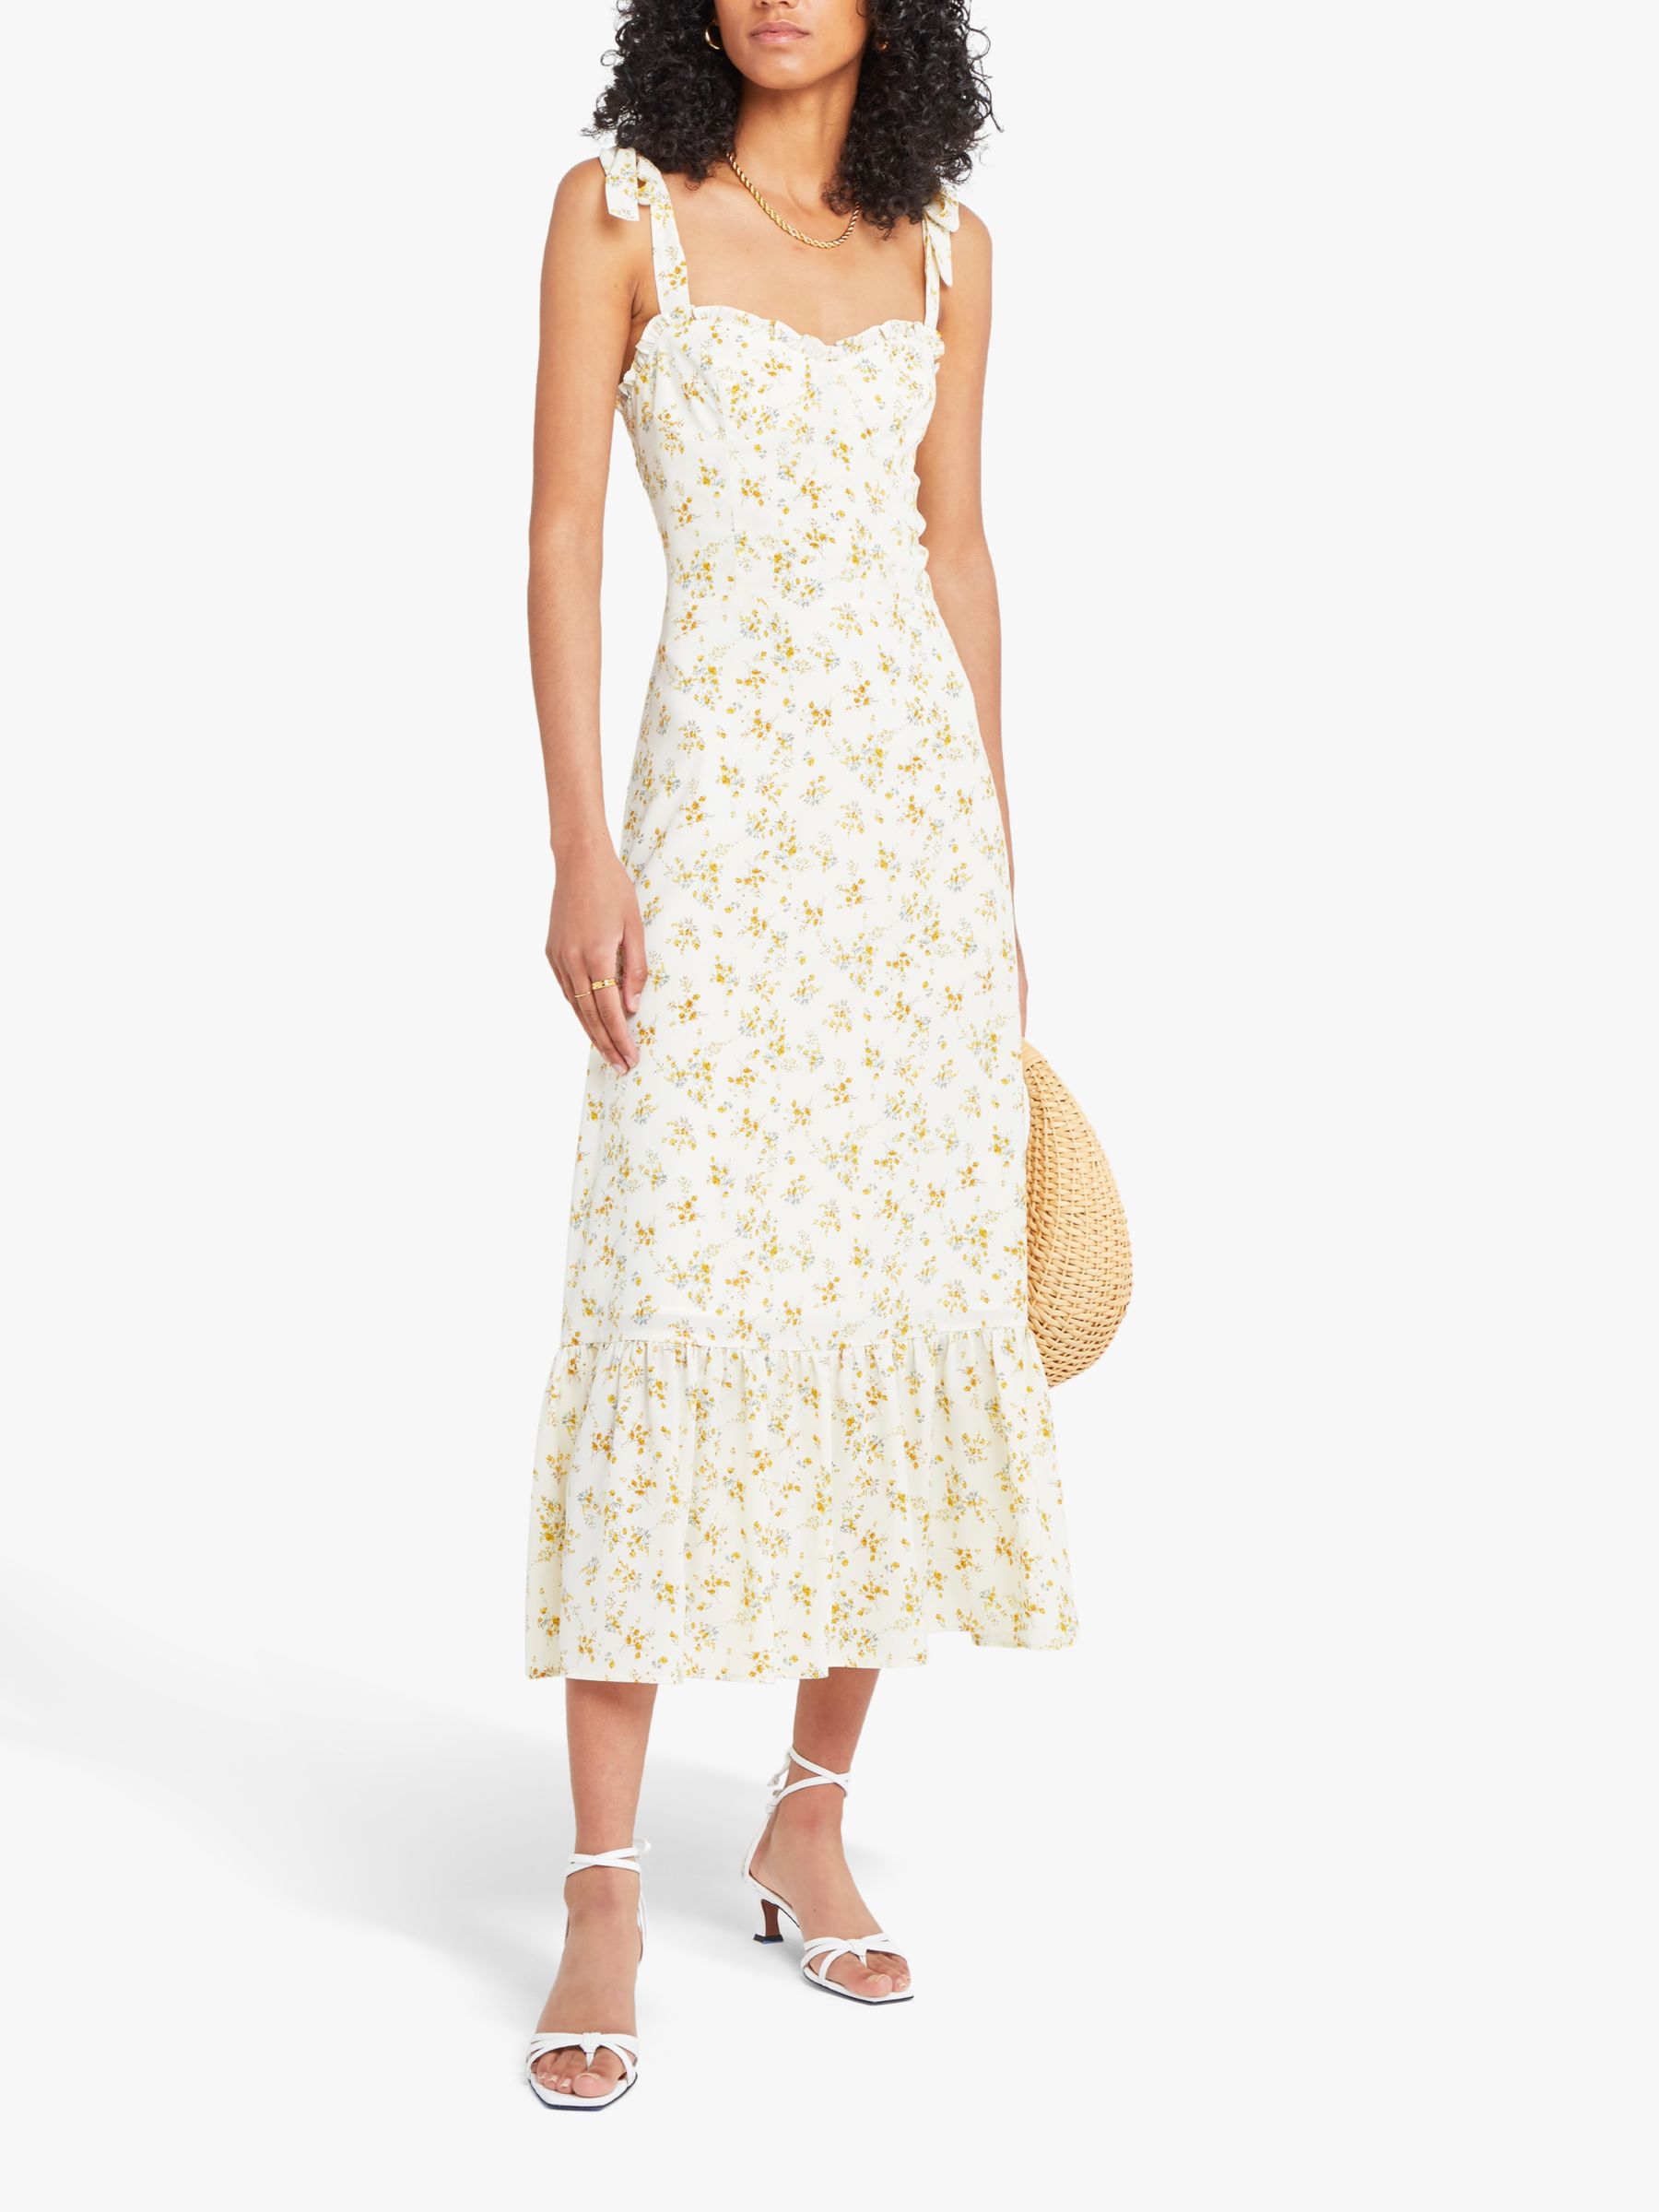 o.p.t Toile de Jouy Floral Print Sleeveless Midi Dress, White, XL